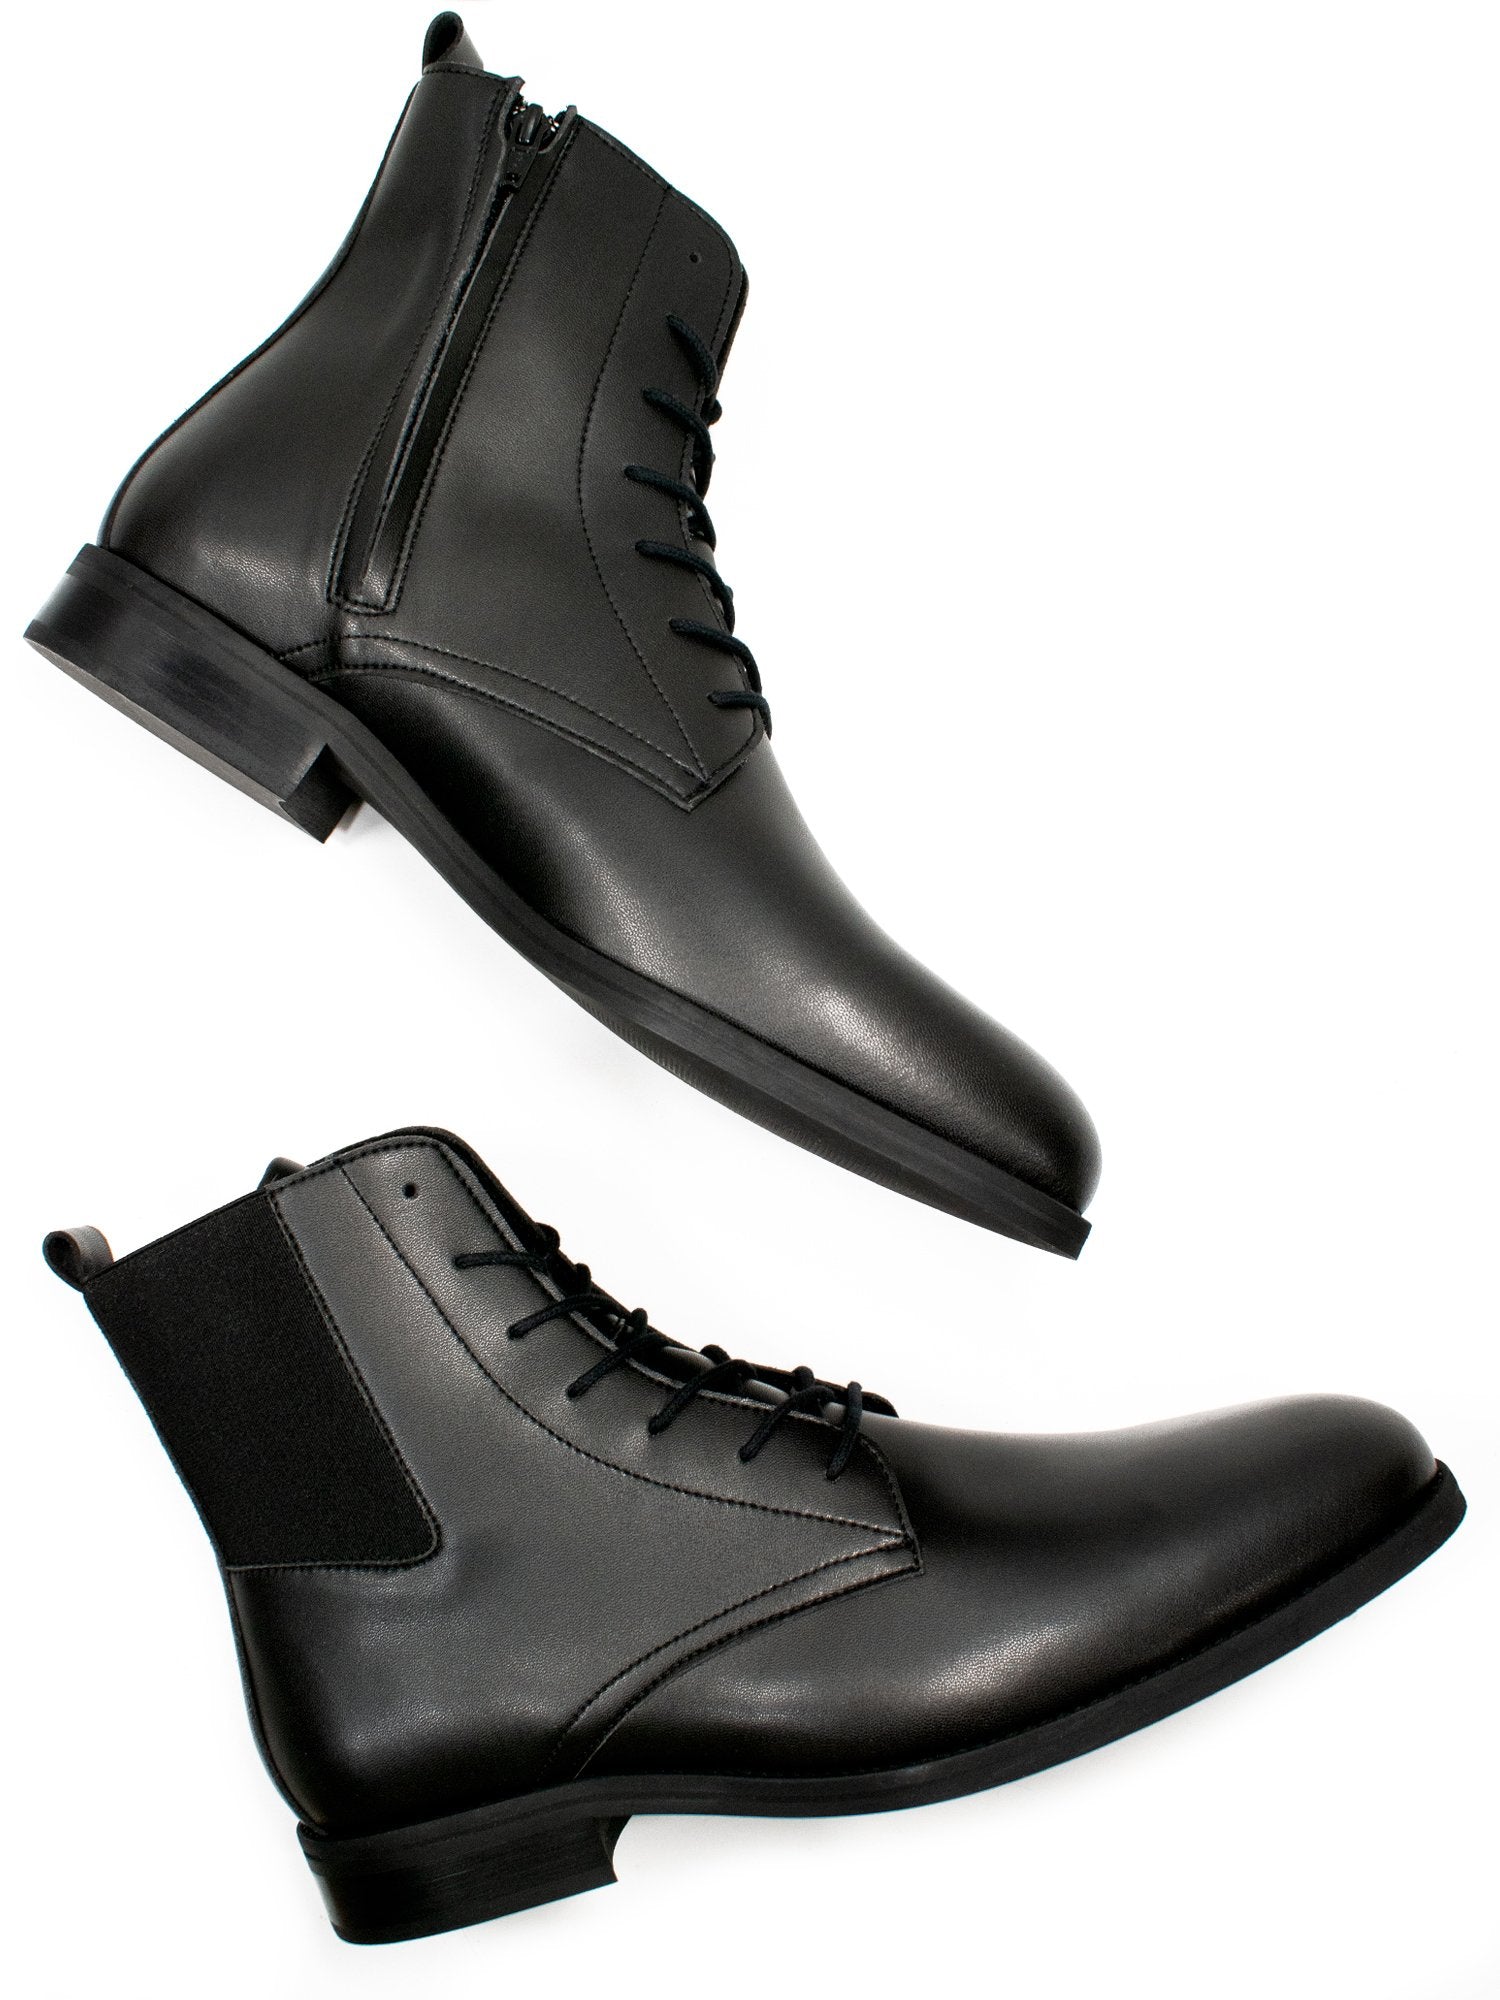 black mens dress boots